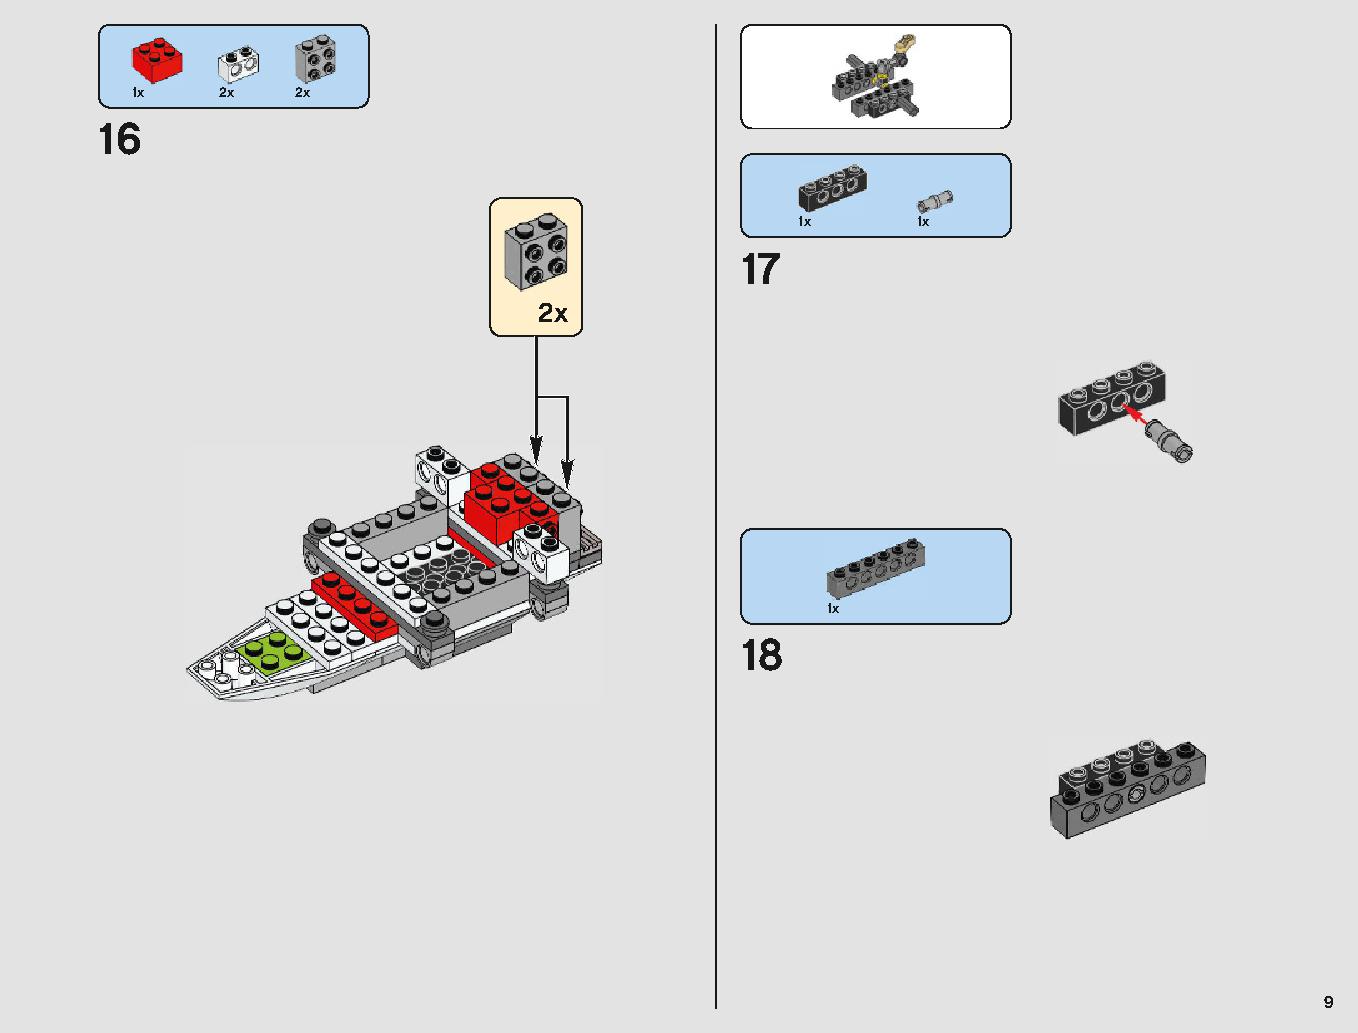 Xウィング・スターファイター 75218 レゴの商品情報 レゴの説明書・組立方法 9 page